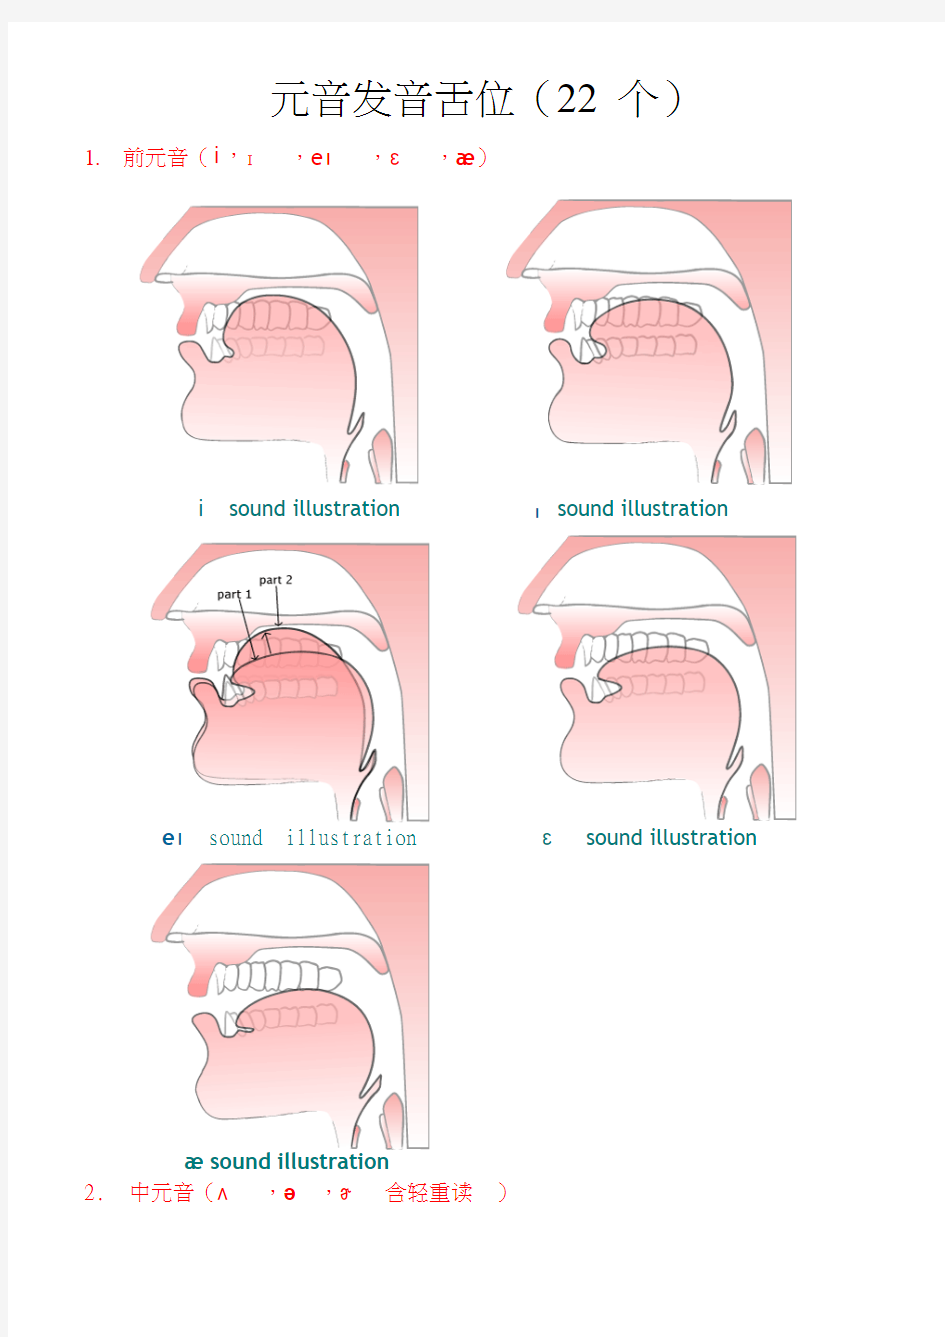 美语发音图及口腔能力训练方法